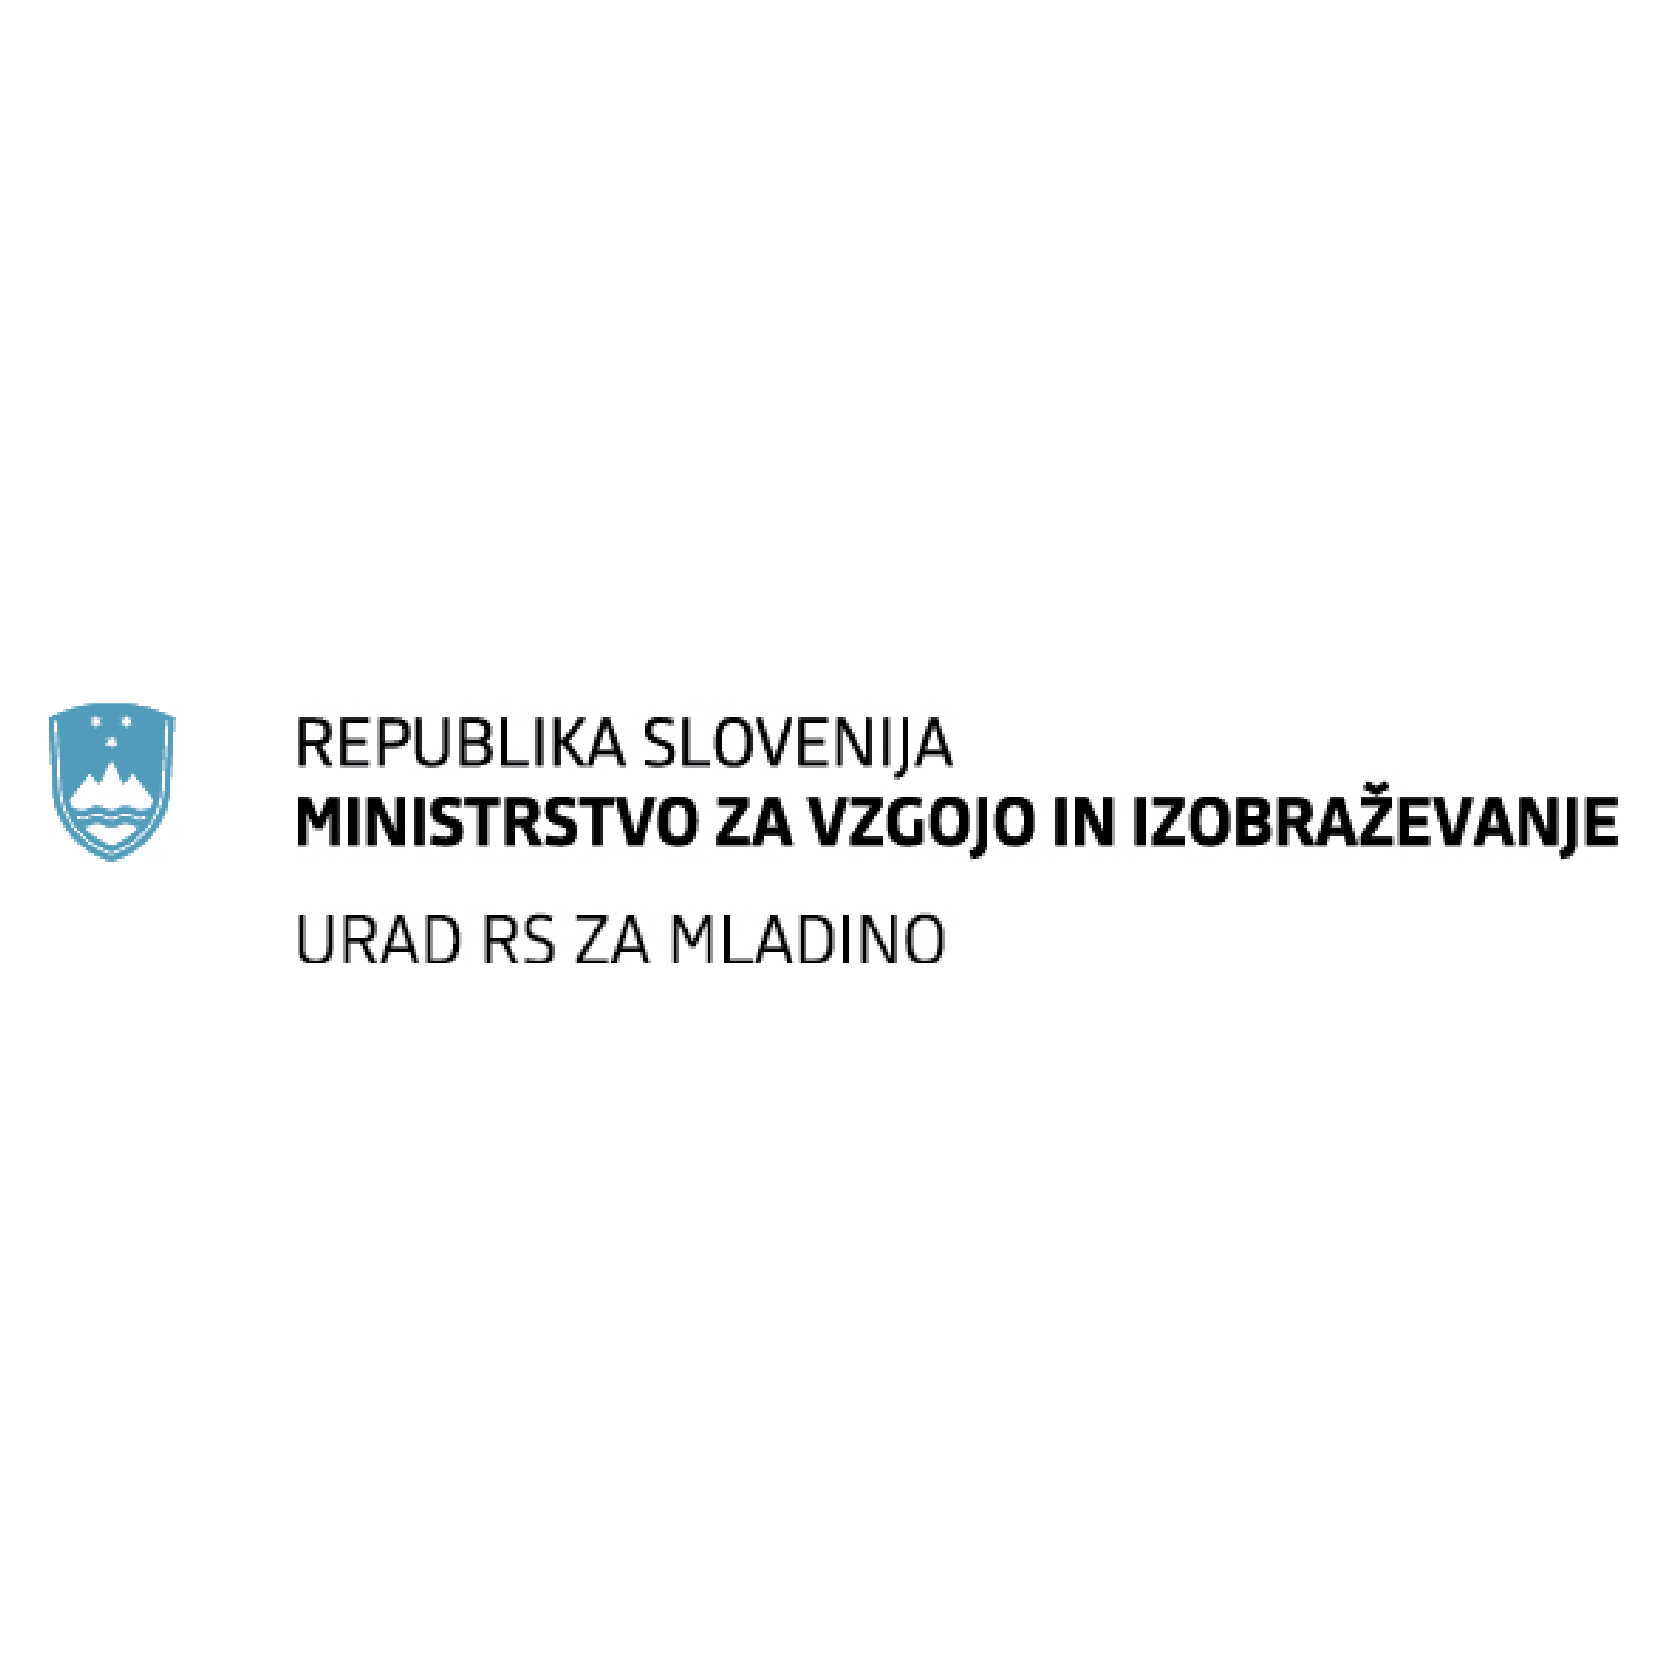 Urad Republike Slovenije za mladino